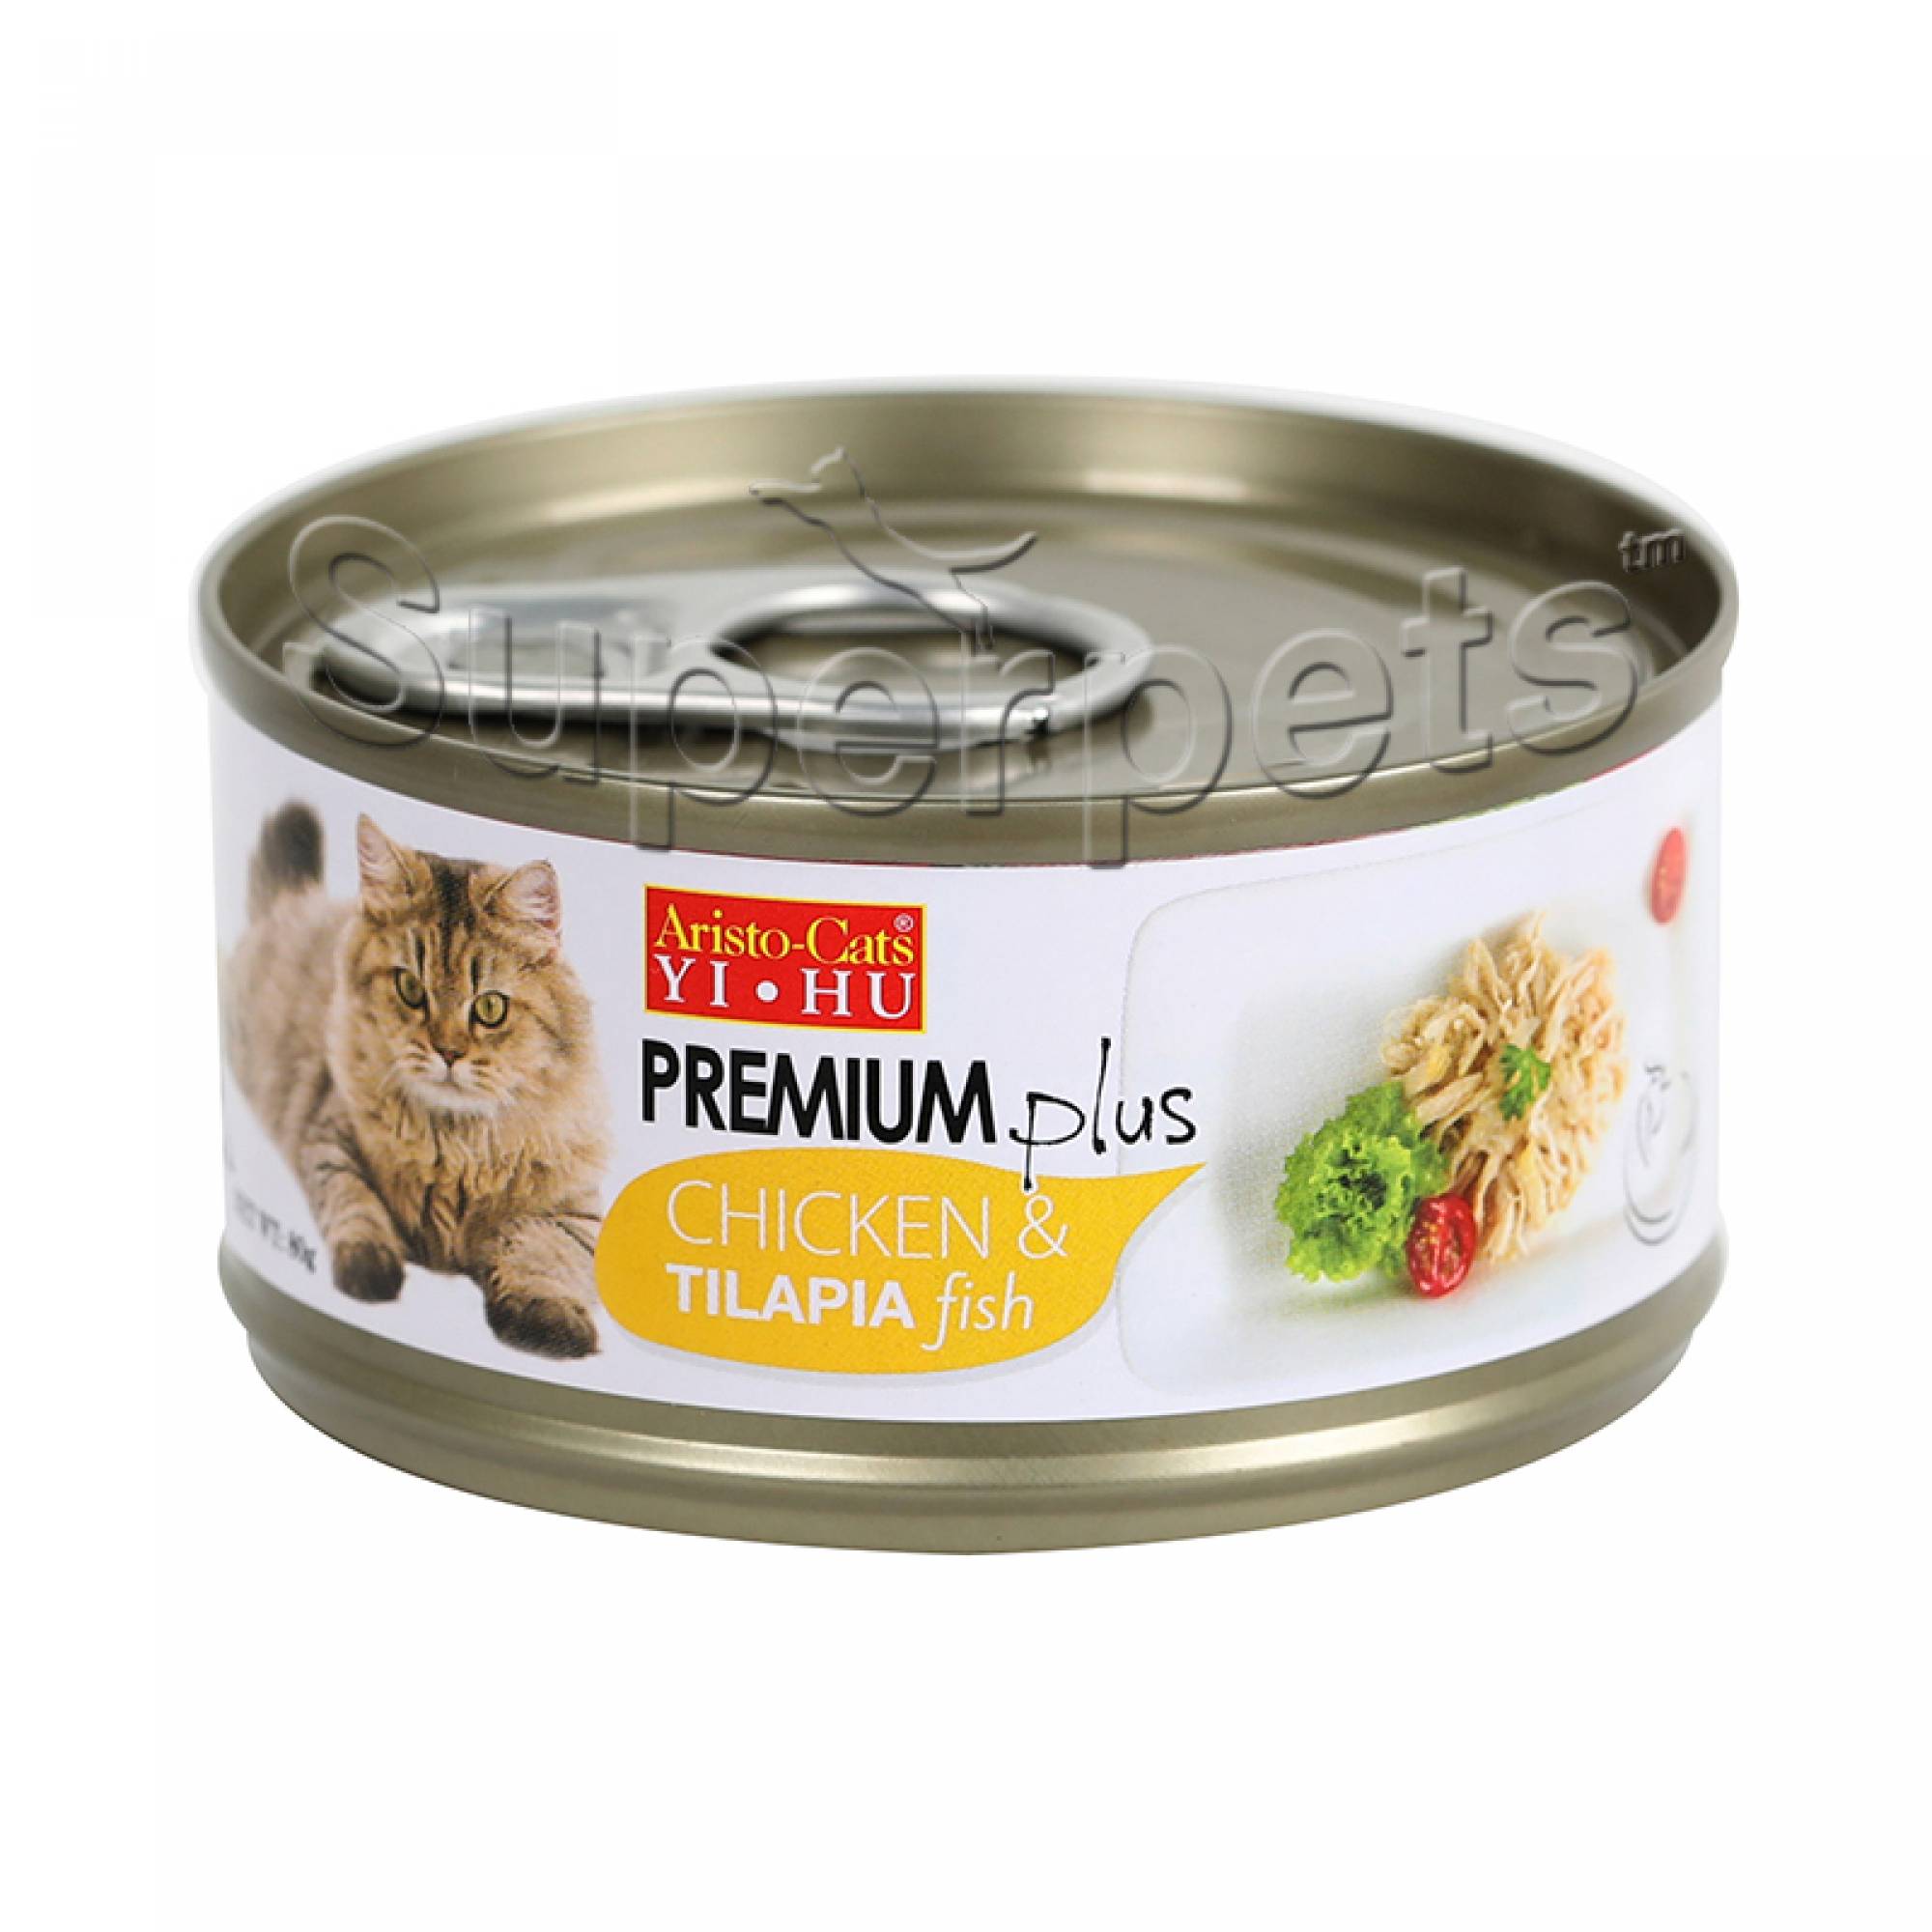 Aristo-Cats - Premium Plus - Chicken & Tilapia Fish 80g